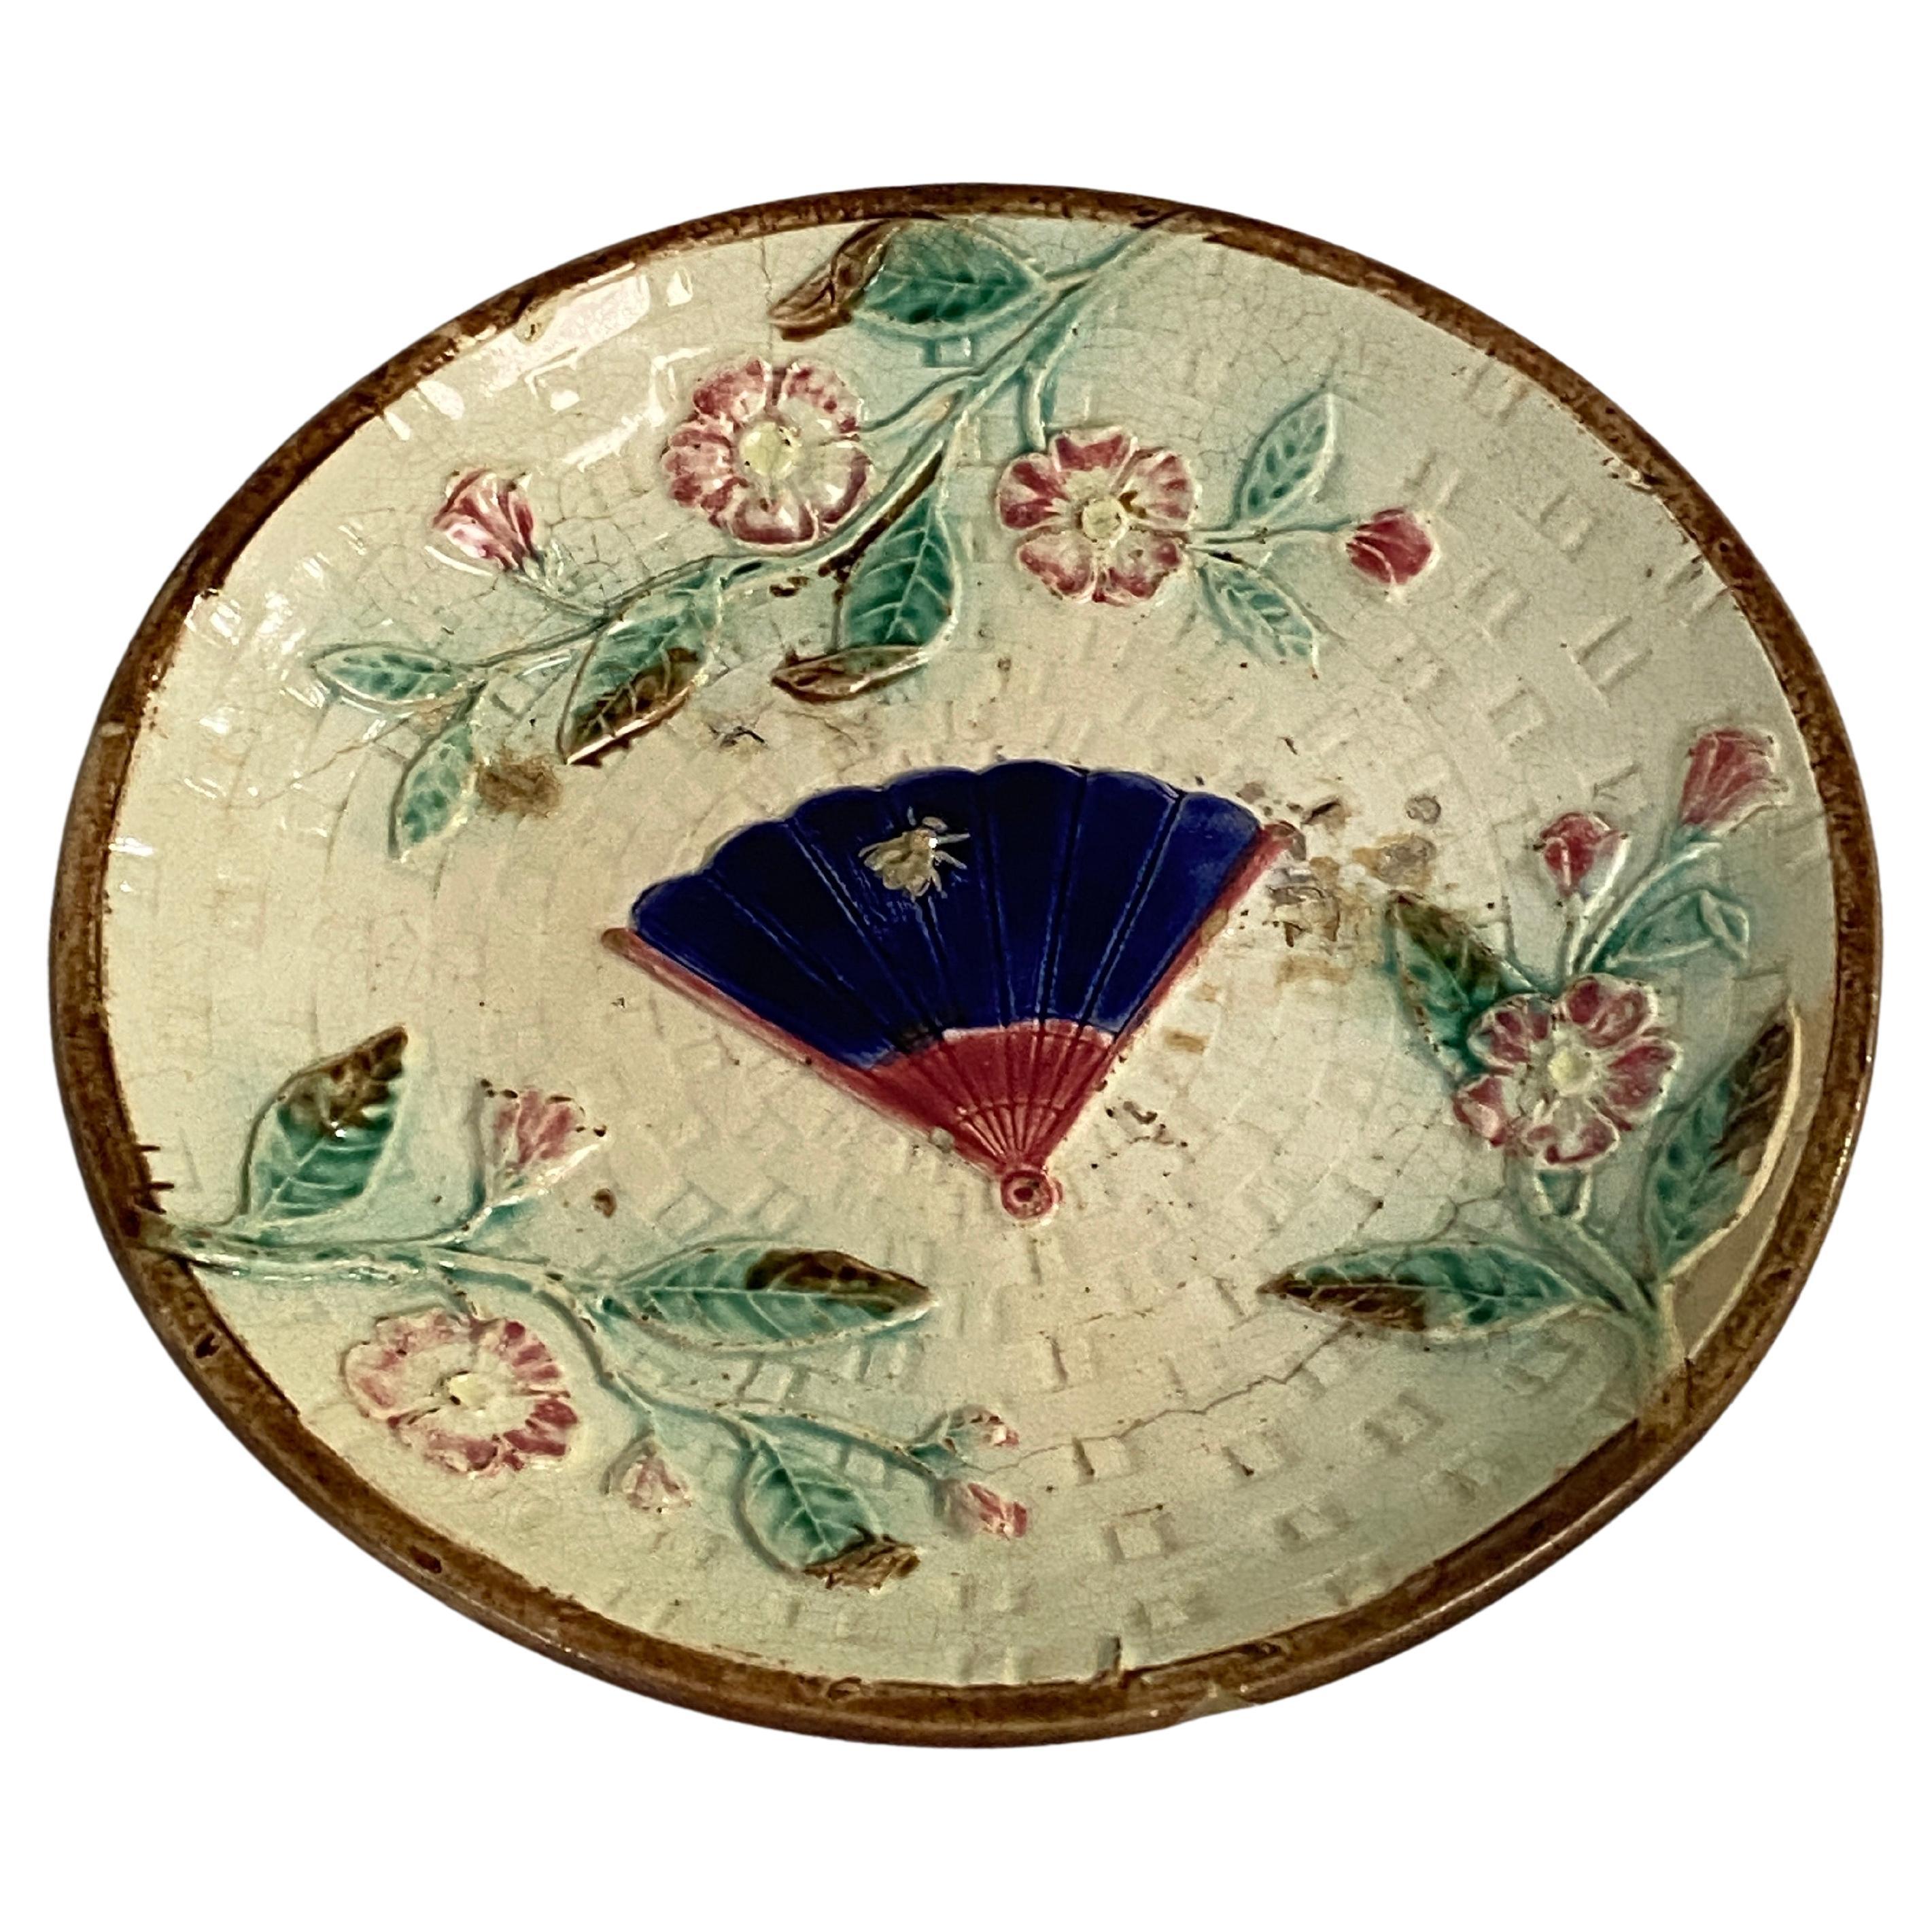 Assiette en majolique française, XIXe siècle, céramique